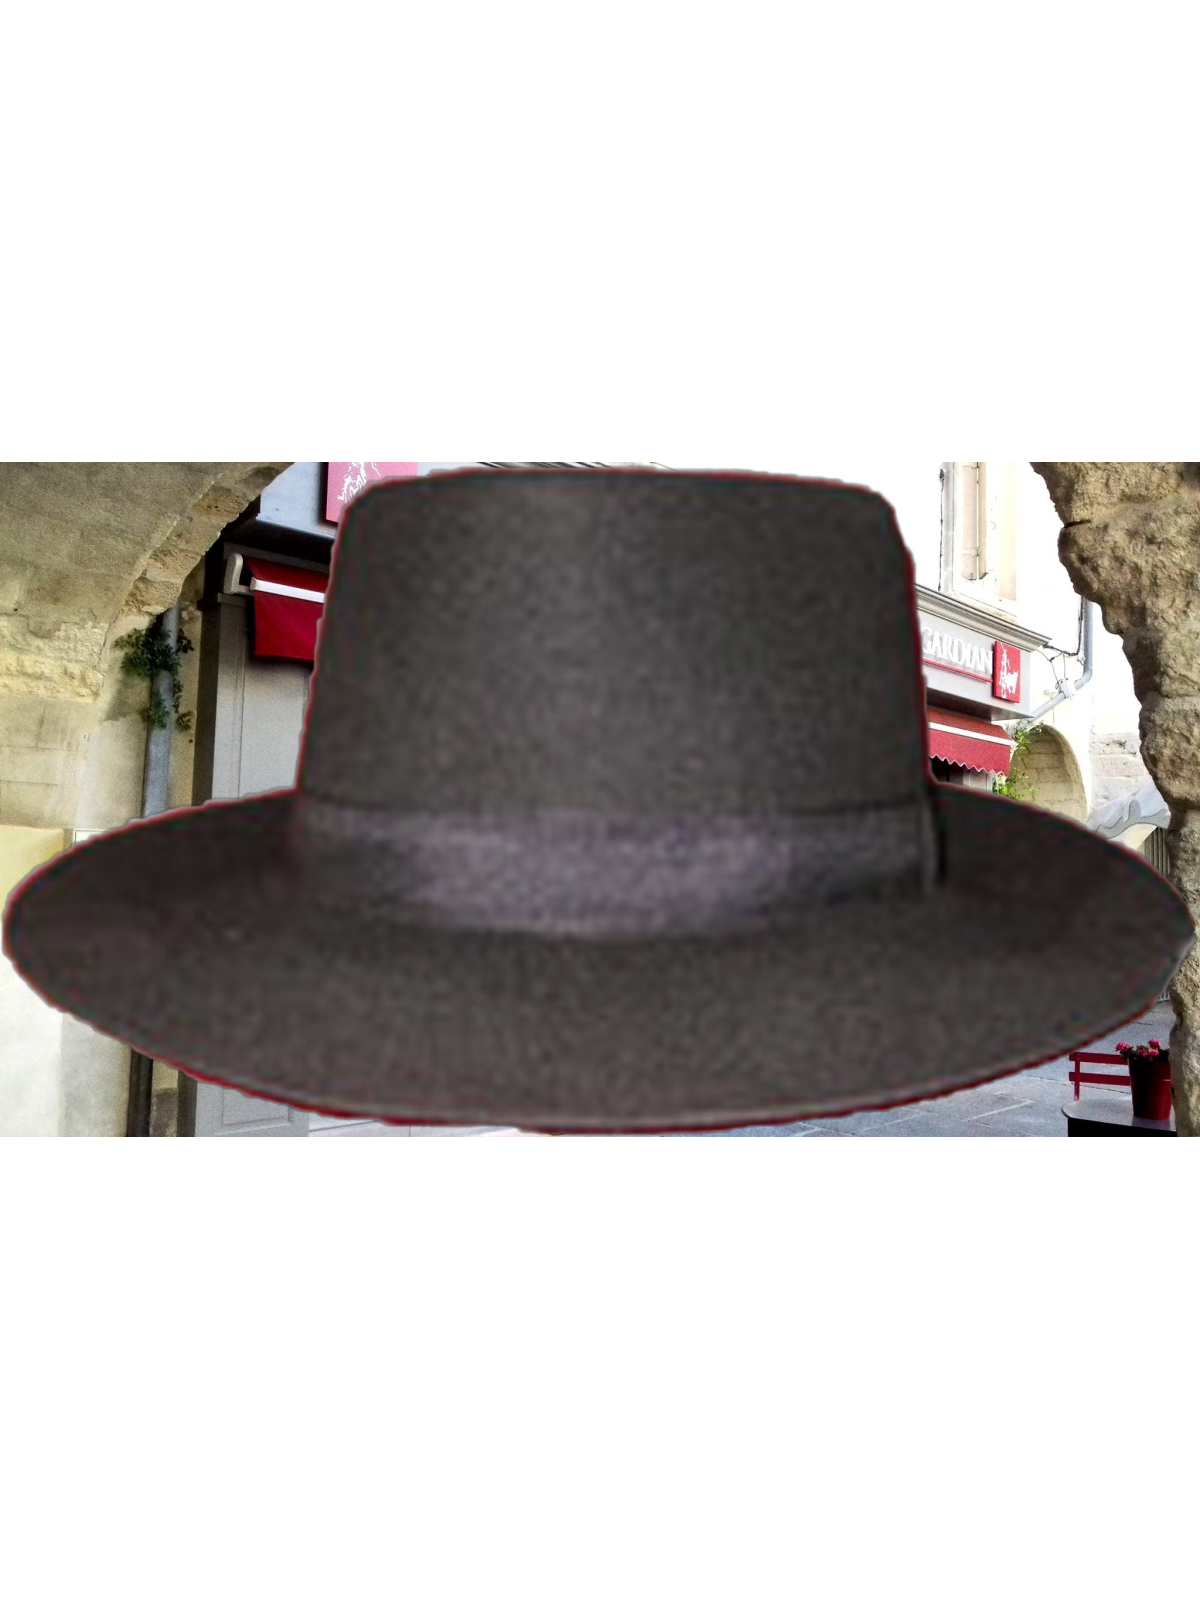 chapeau gardian petit bord -noir